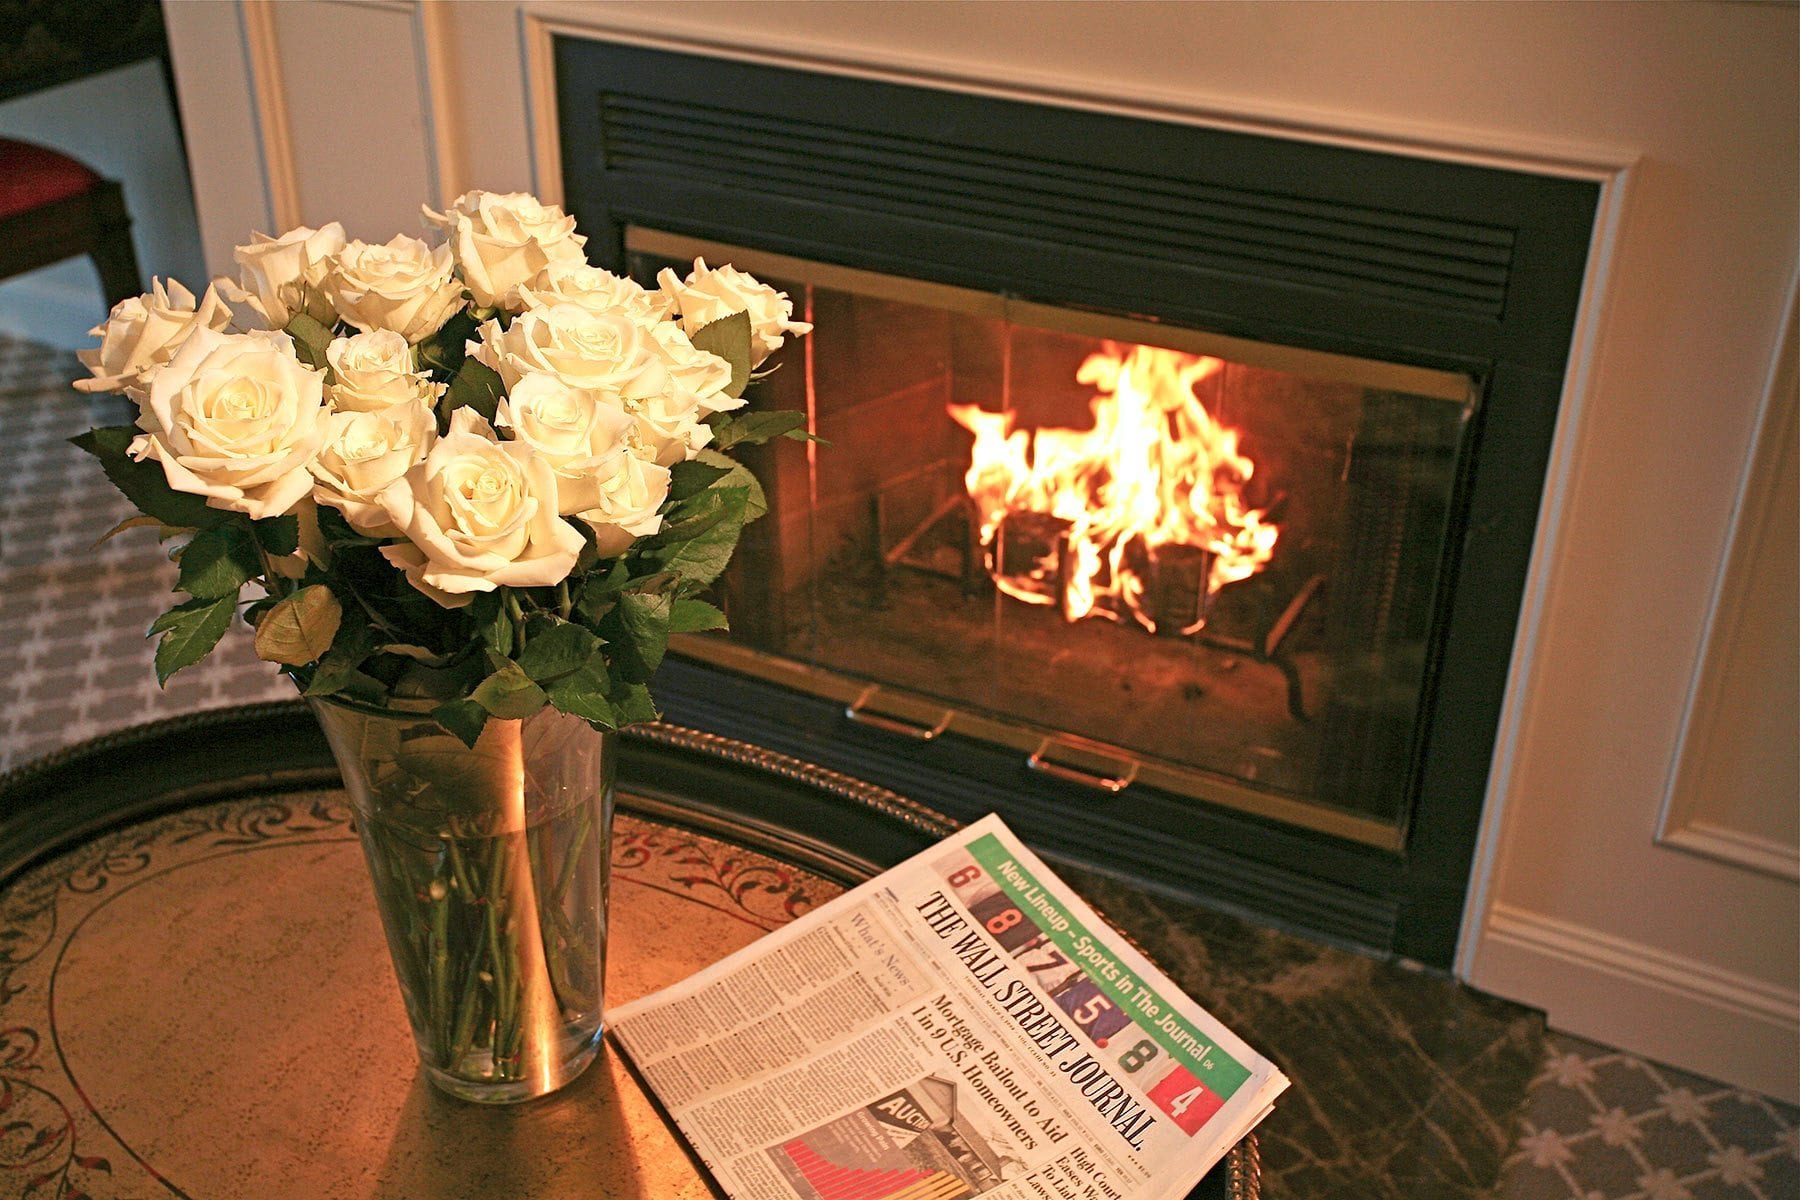 Flowers near fireplace.